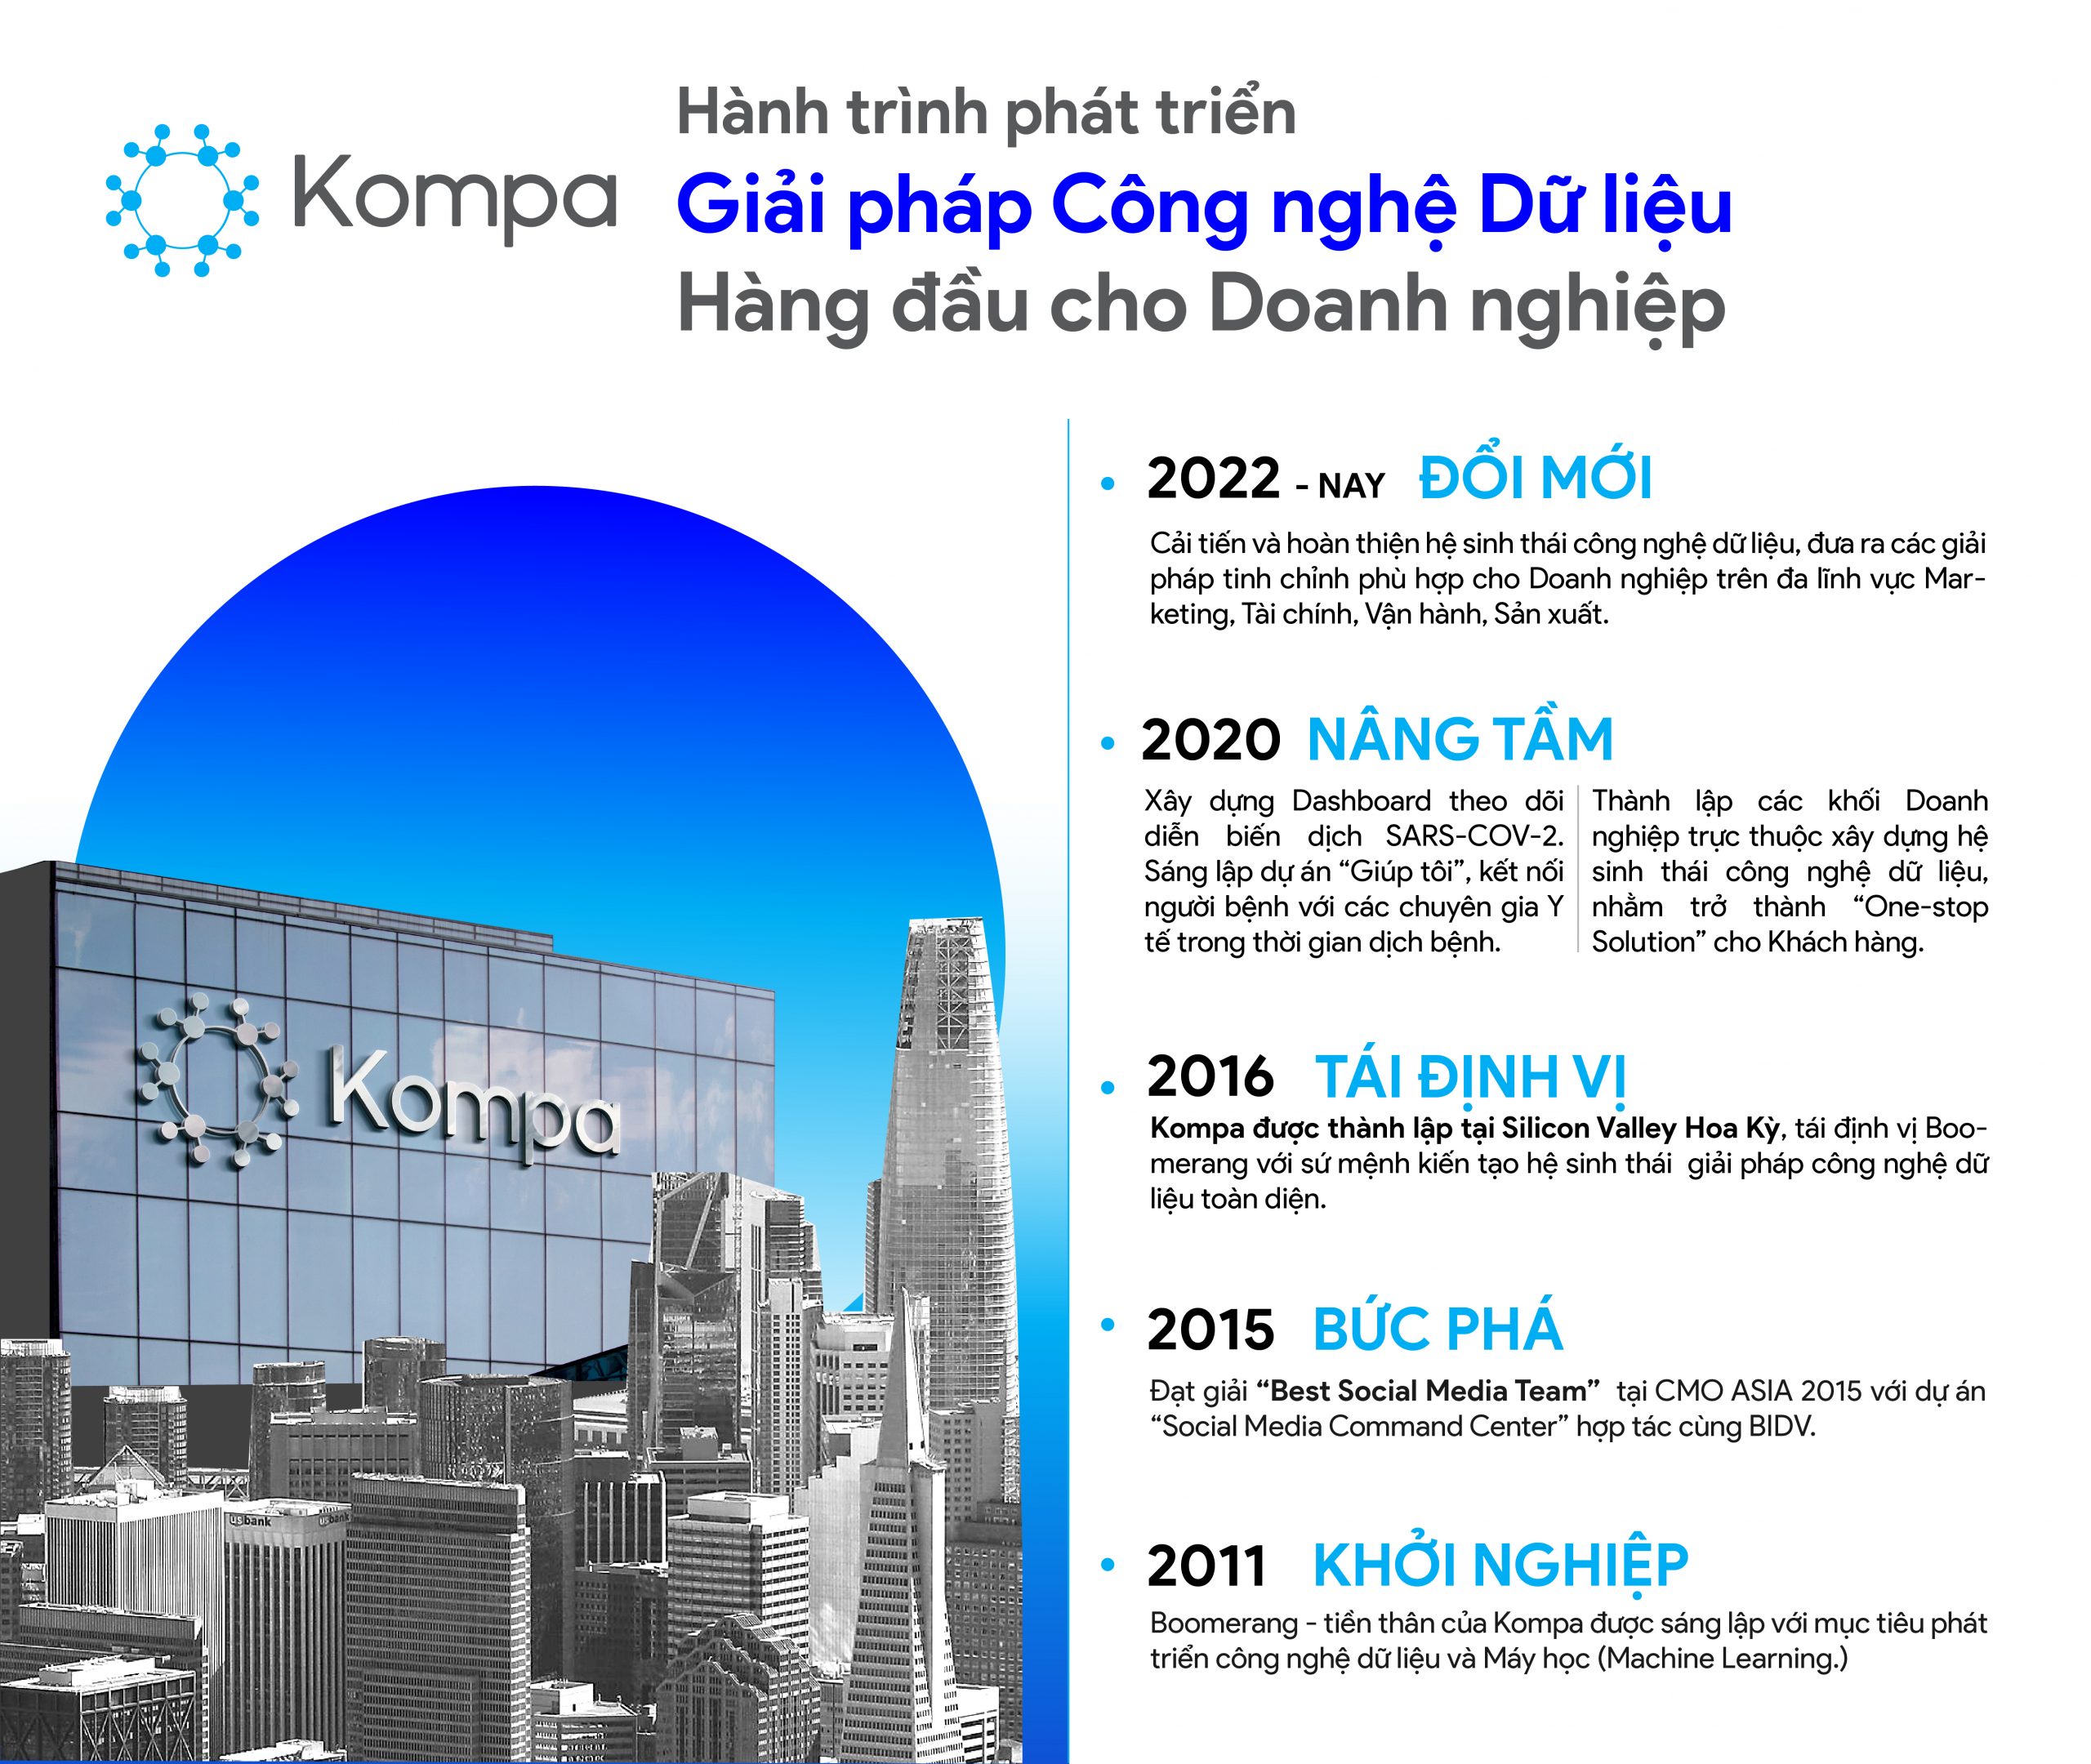 Hành trình đổi mới, phát triển không ngừng của Kompa